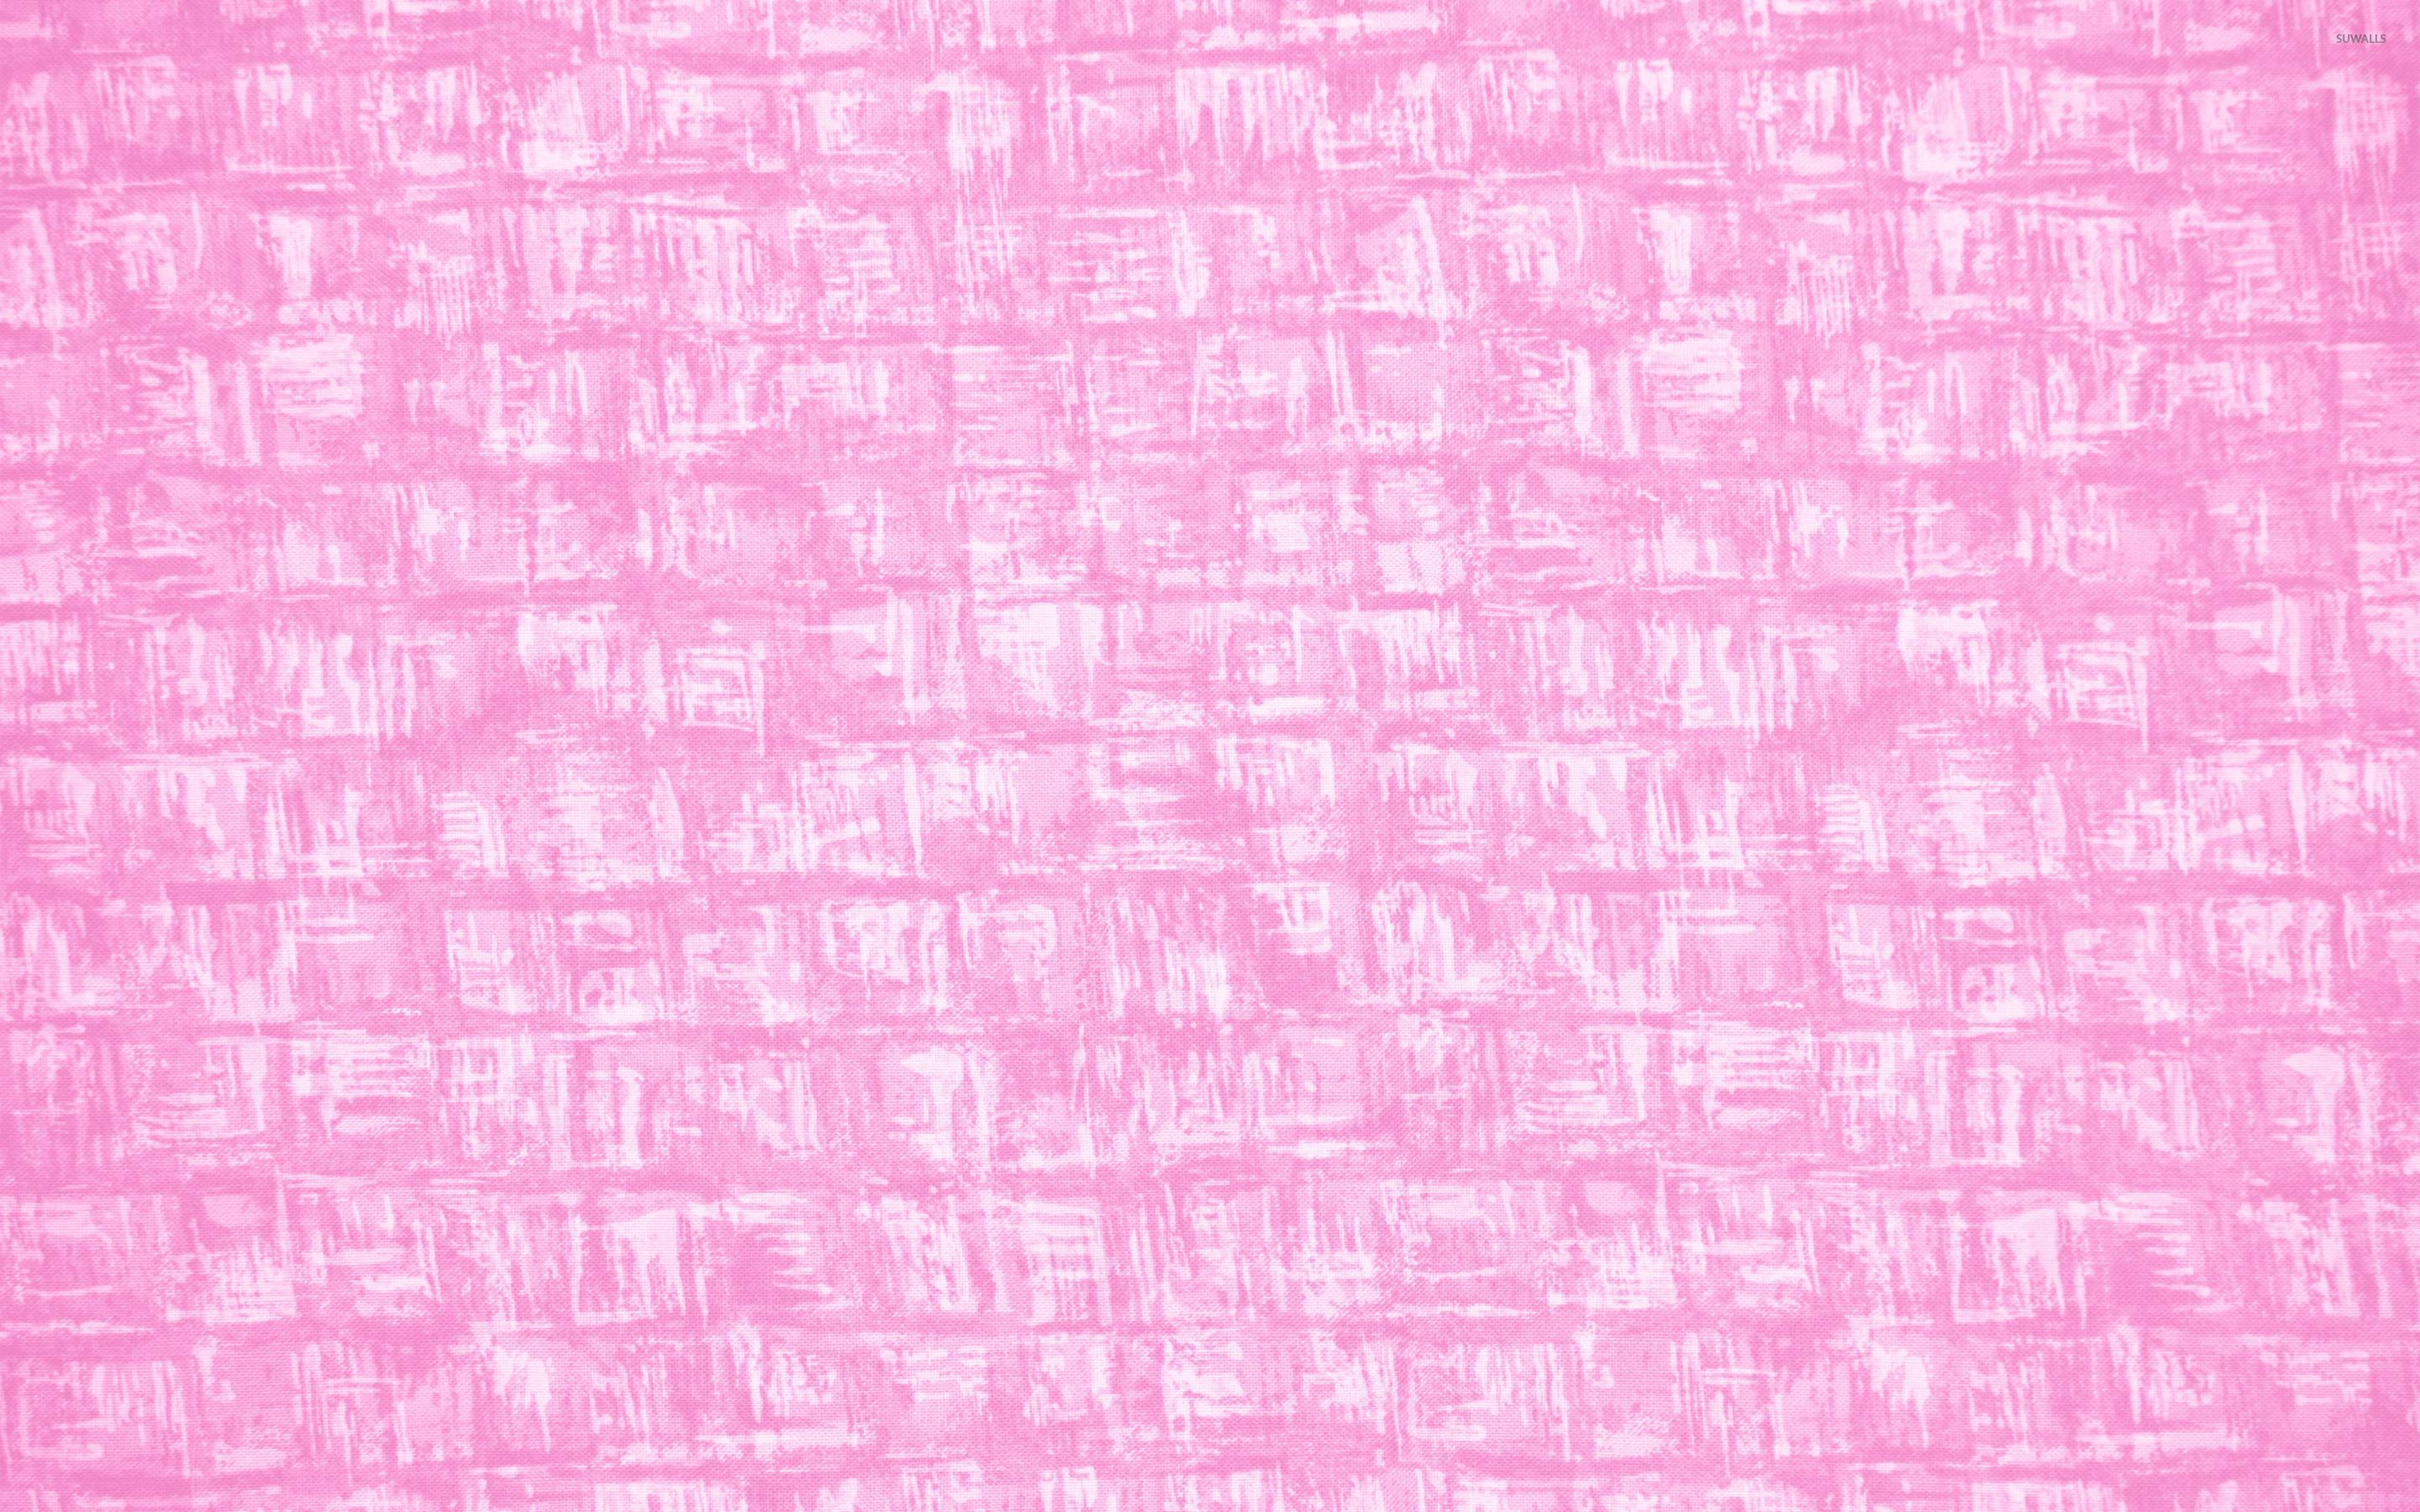 Pink texture wallpaper - Digital Art wallpapers - #24896